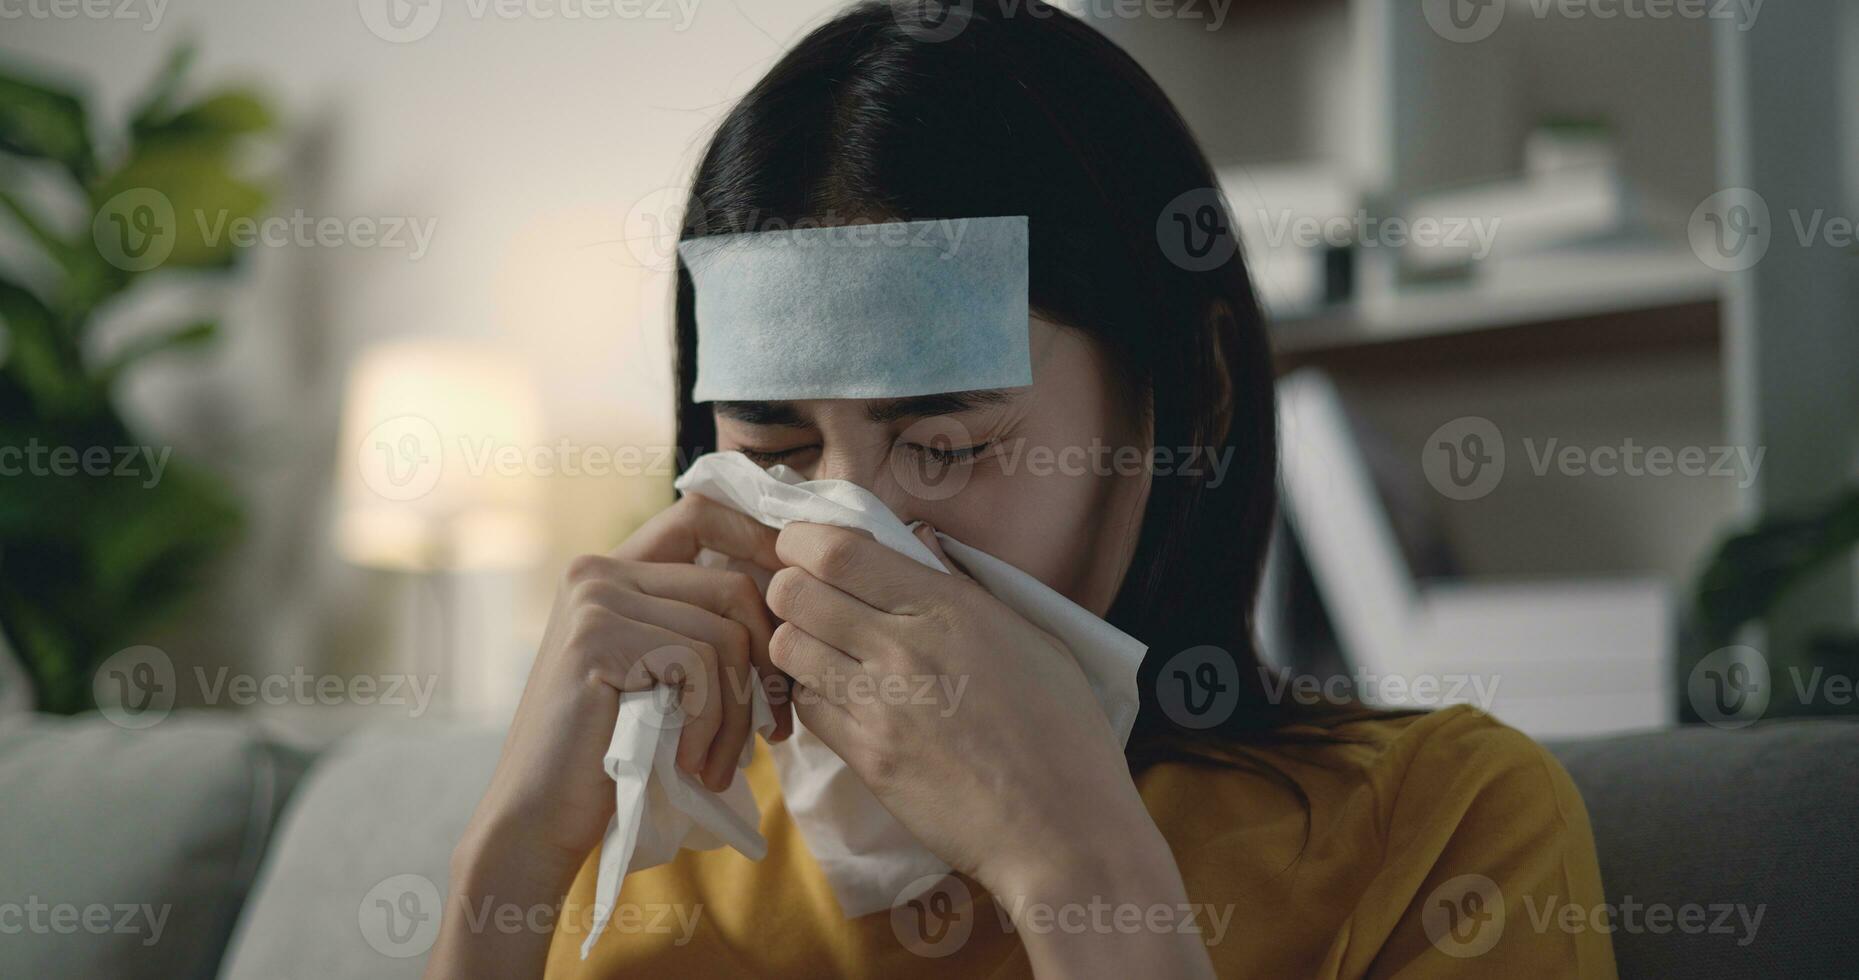 joven asiático mujer sufrimiento desde gripe con un para reducir la fiebre parche en su frente foto